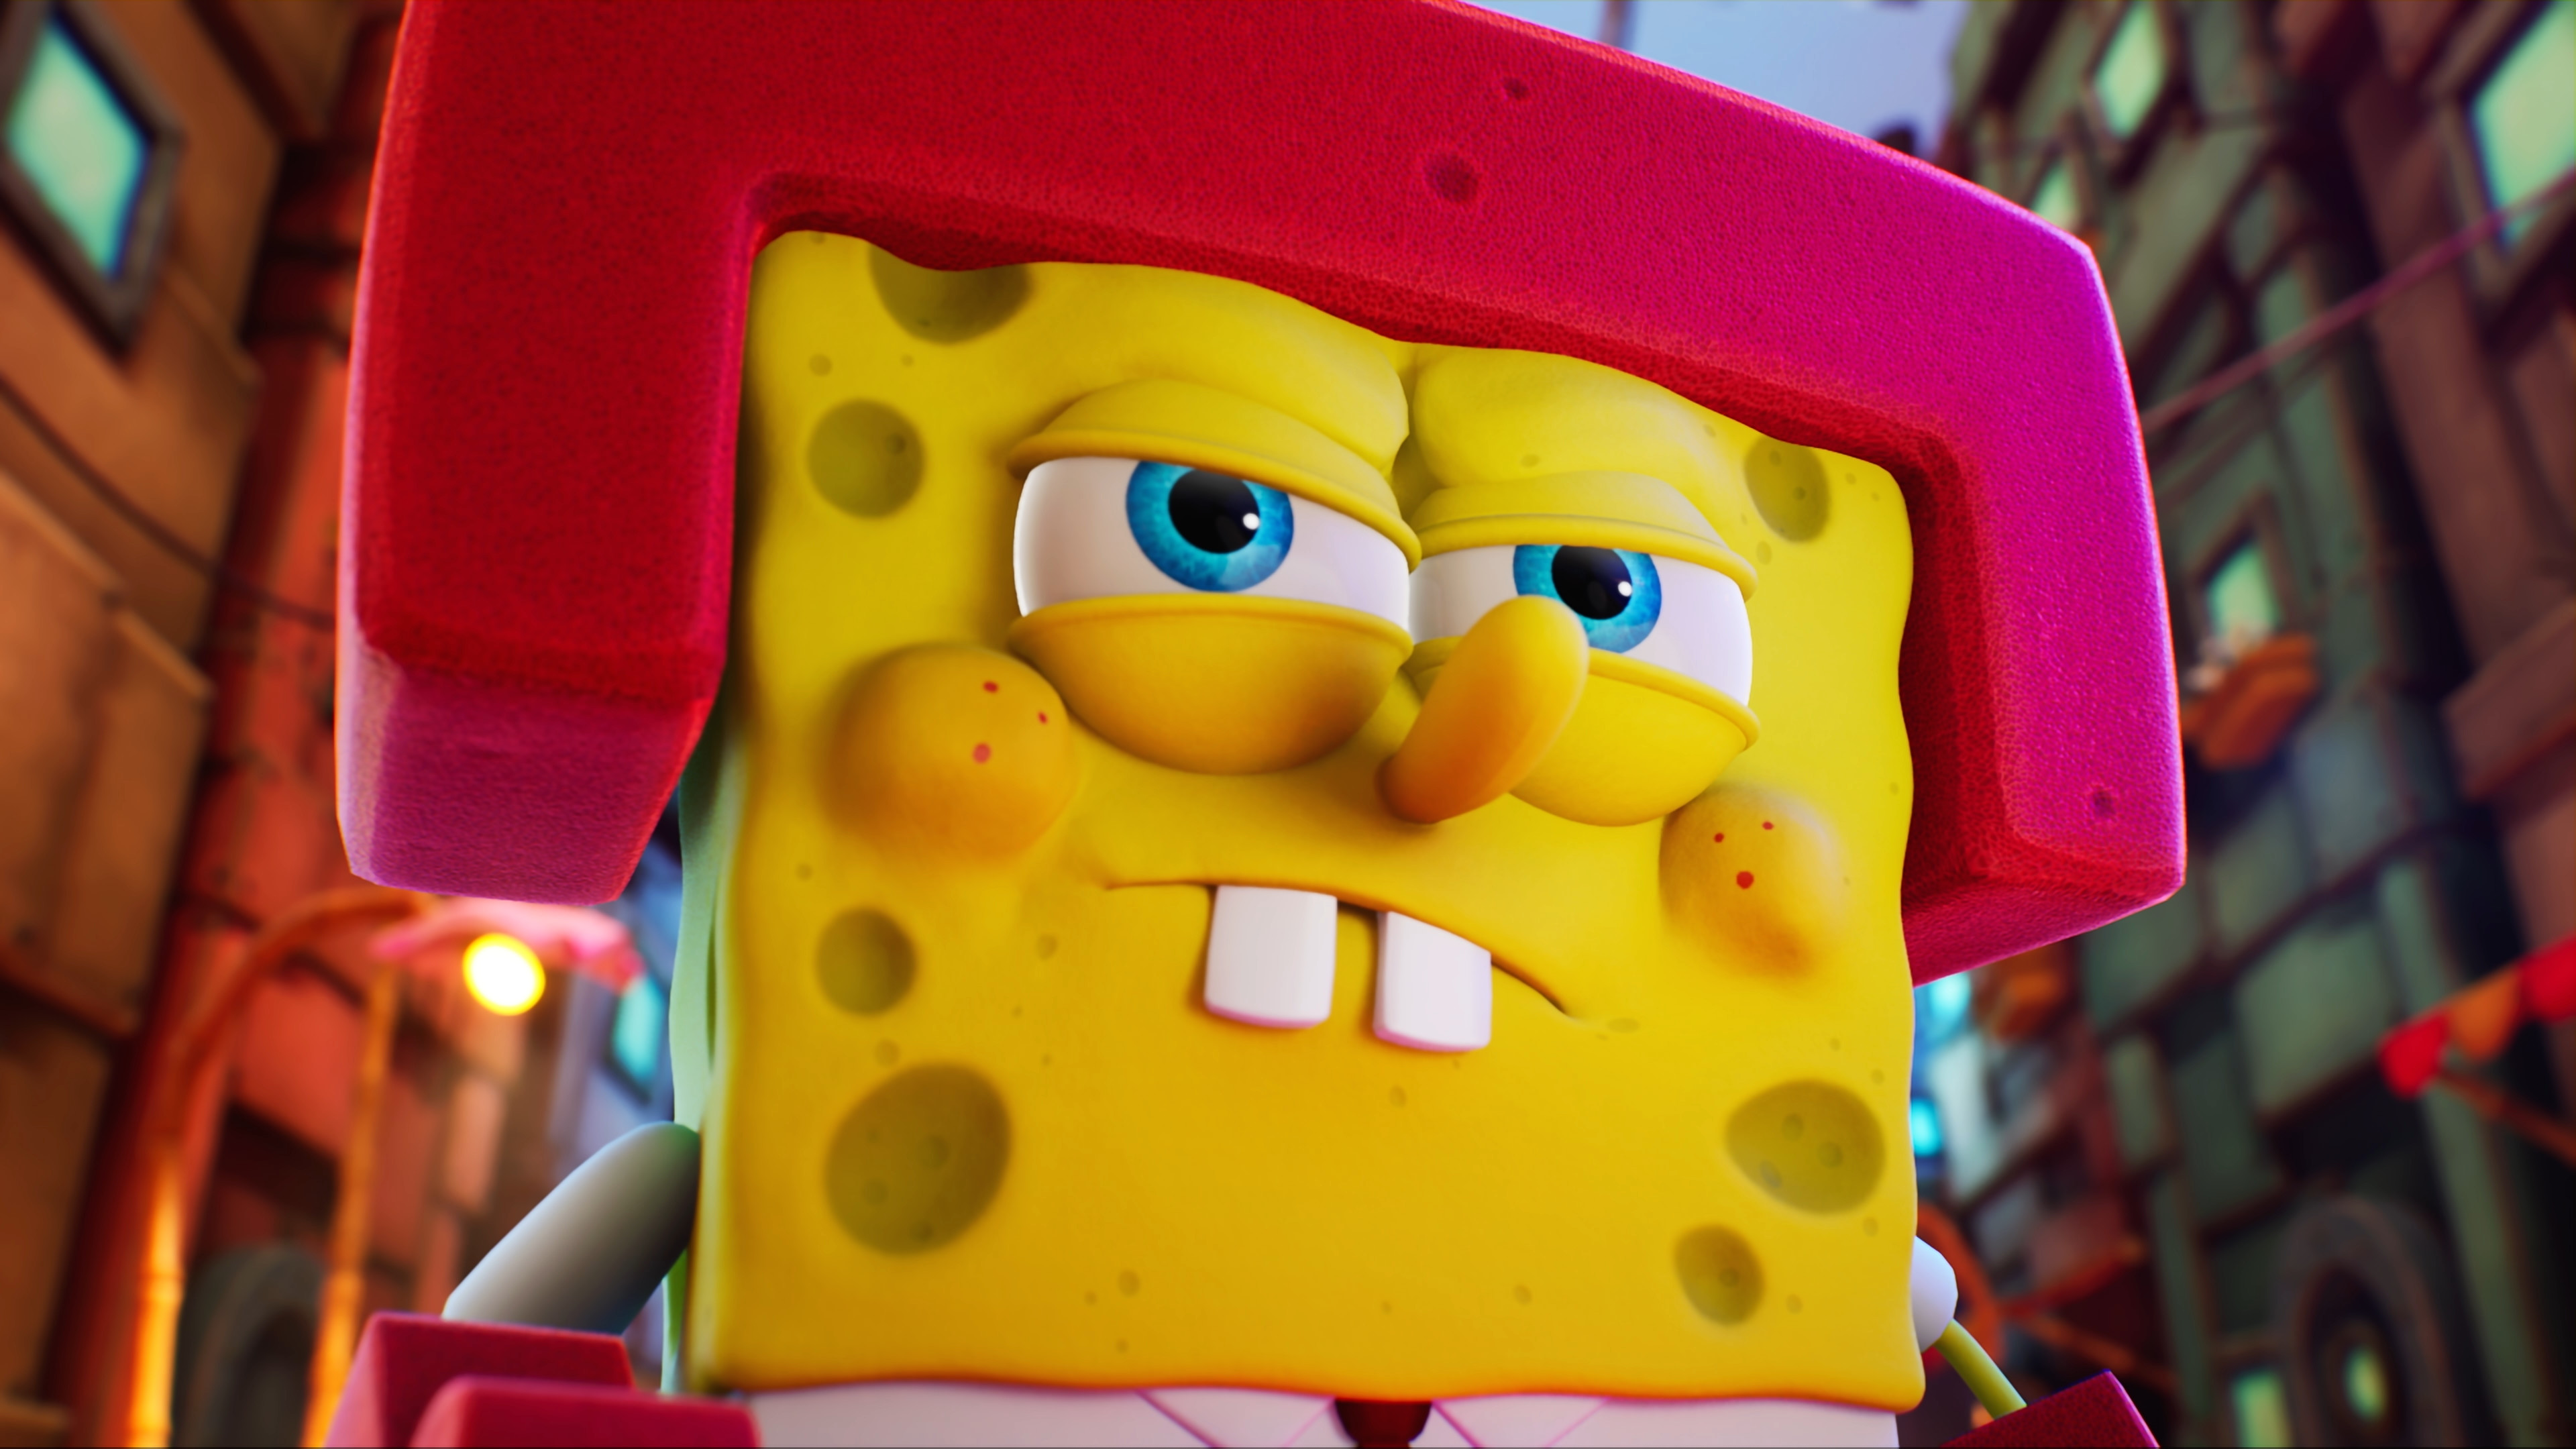 SpongeBob SquarePants: The Cosmic Shake review: all-ages fun | Digital  Trends